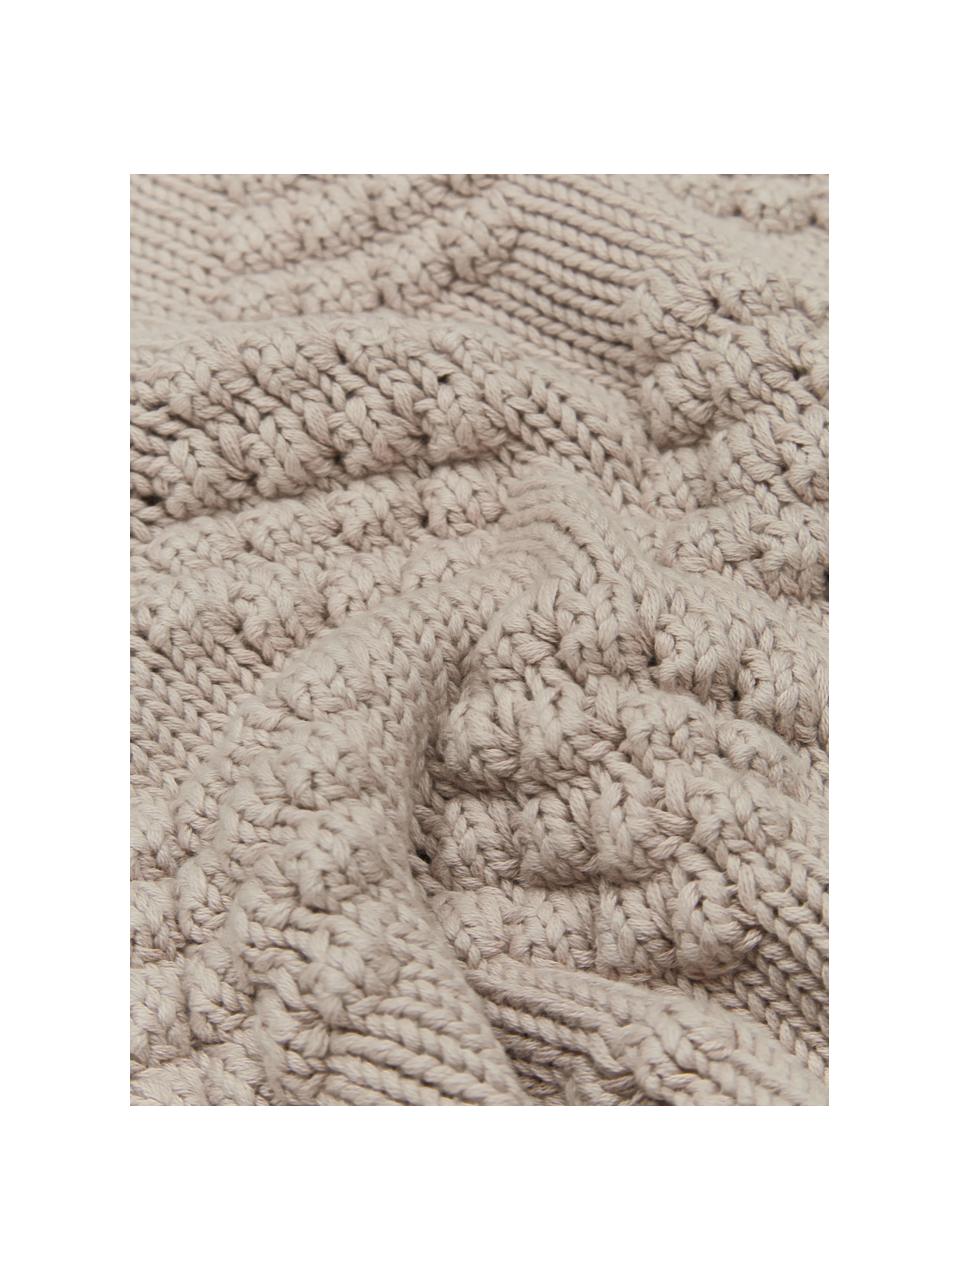 Gebreide kussenhoes Kelly met structuurpatroon, 100% gekamd katoen, Beige, B 40 x L 40 cm